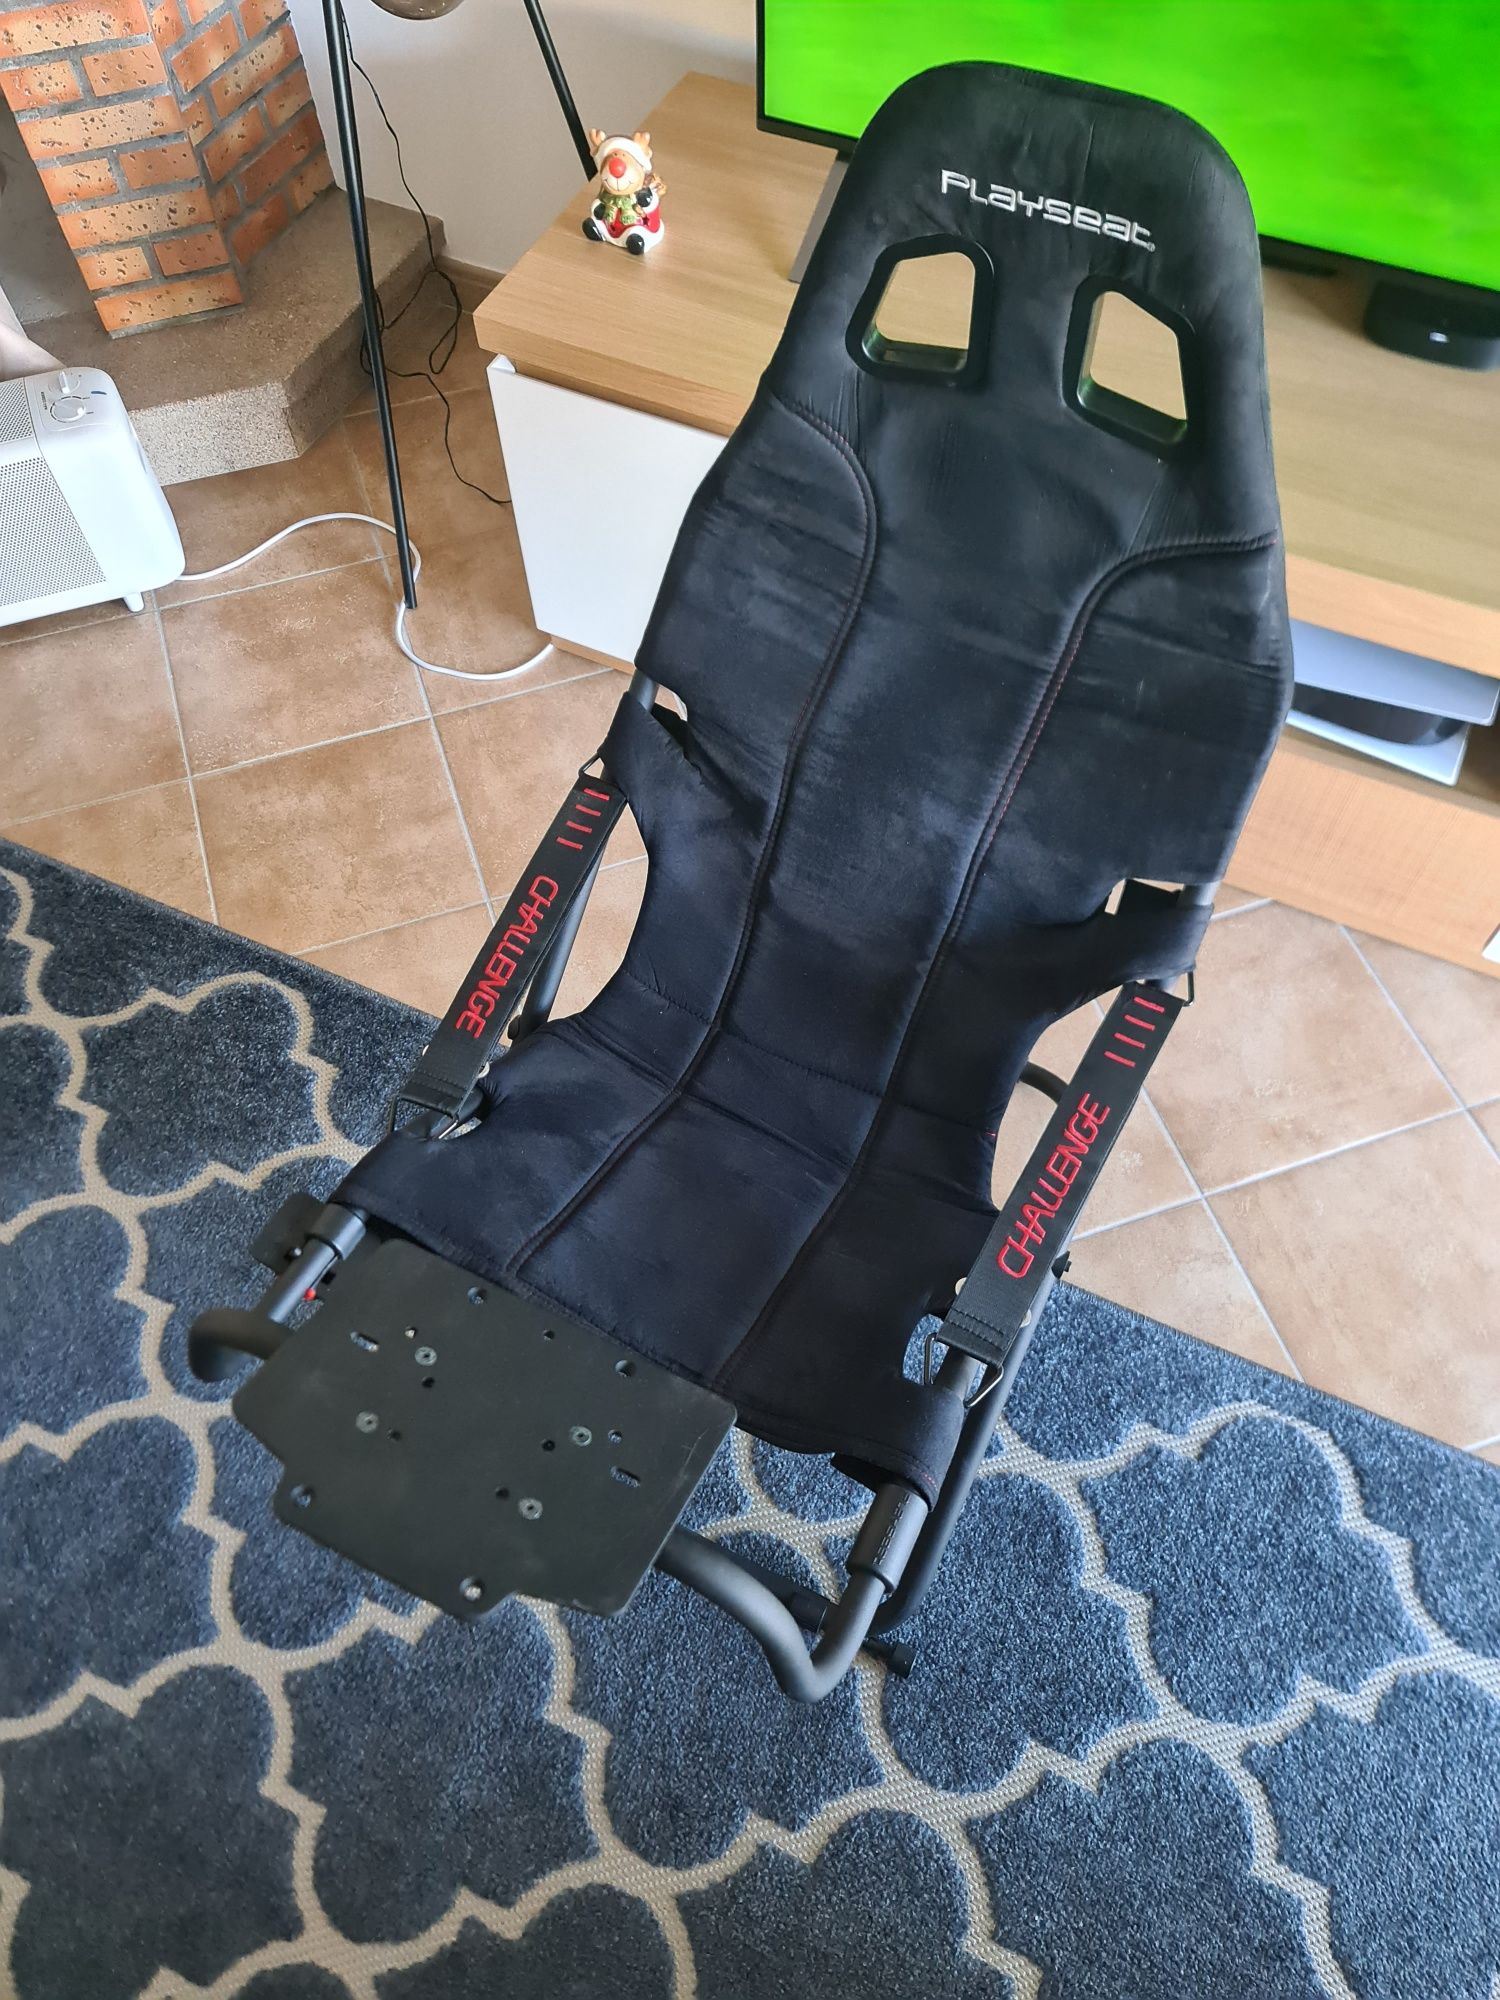 Cadeira Playseat + volante e pedais Logitech G29